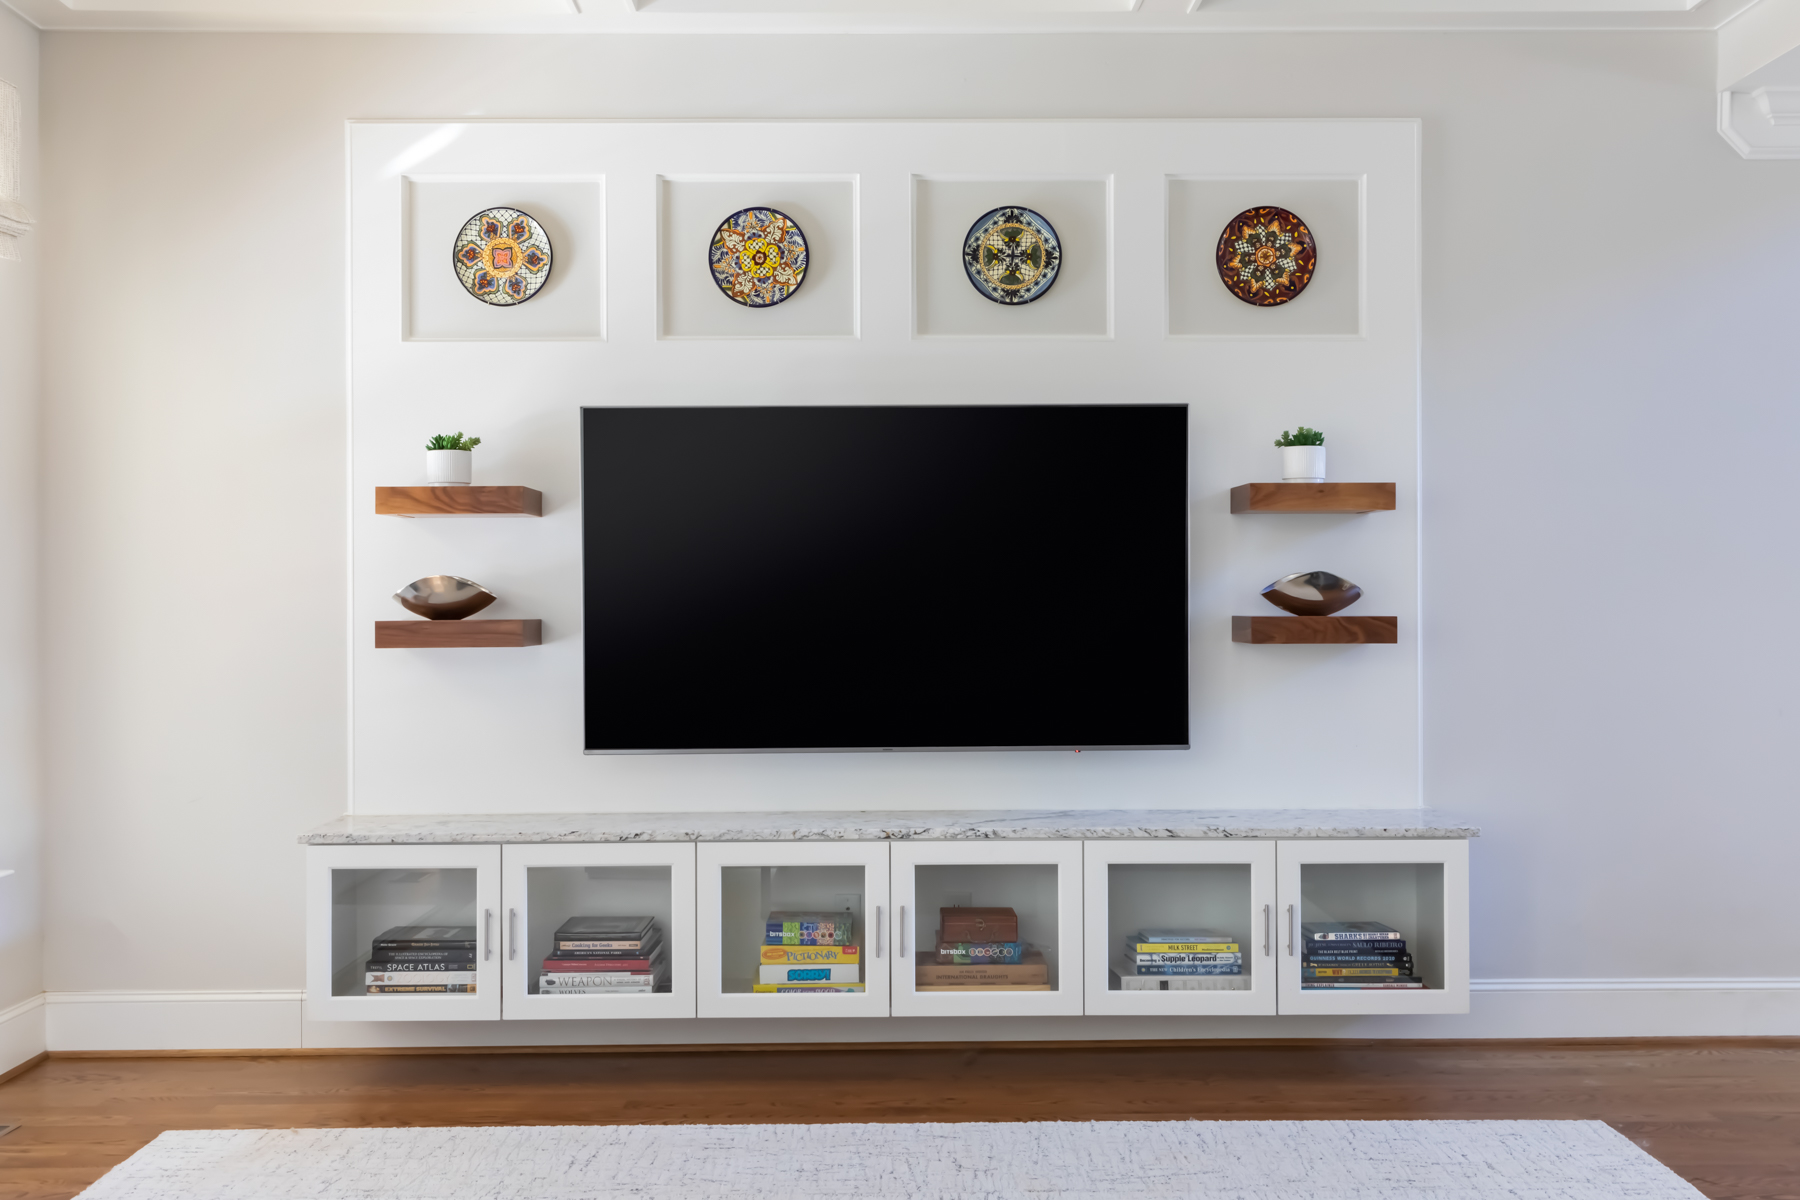 LK Design living room custom built TV wall white floating shelves and decor items